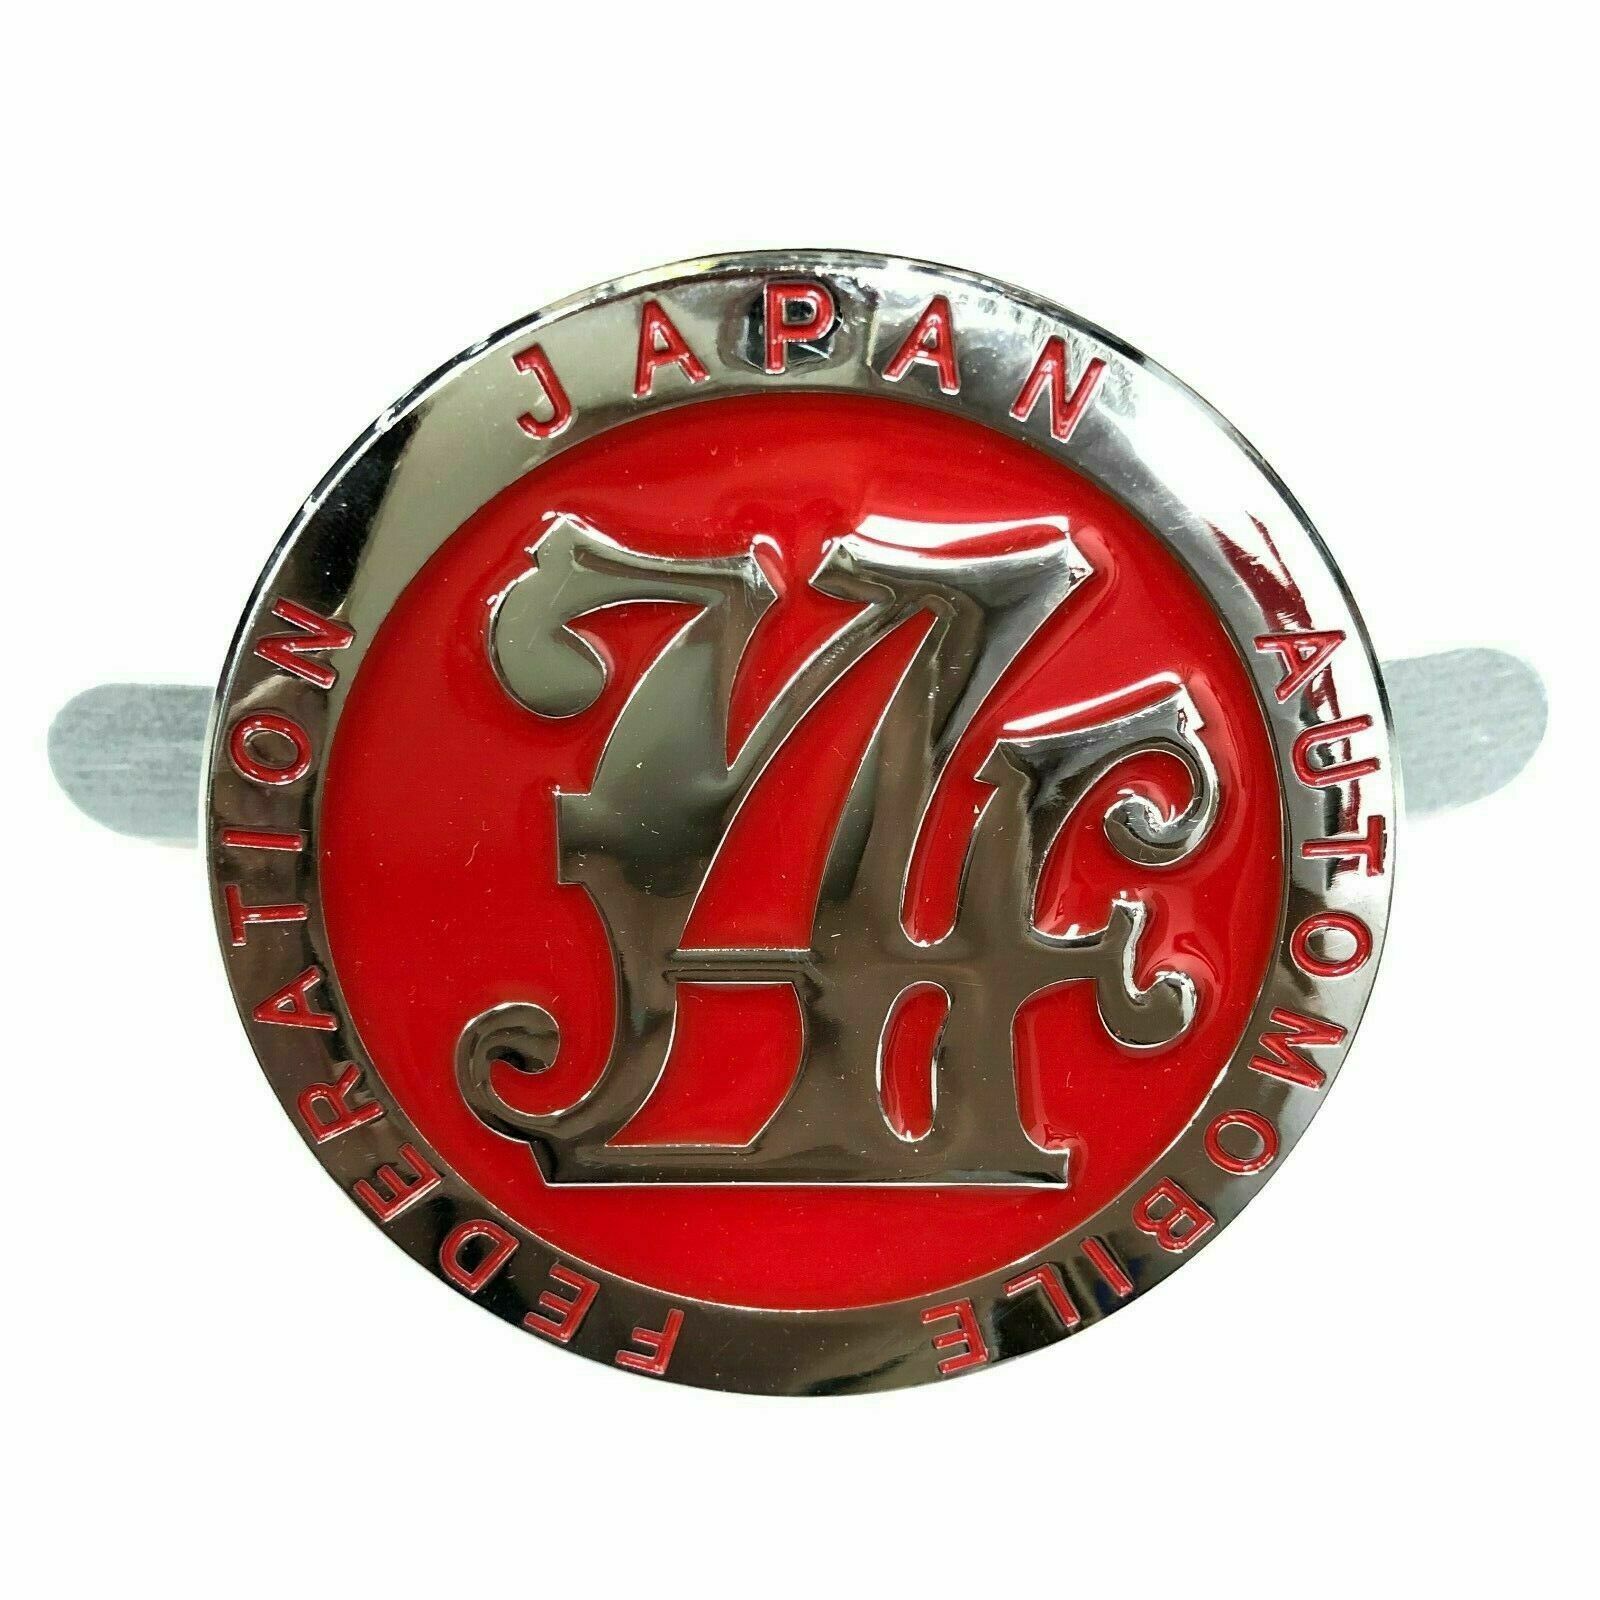 Japan Automobile Federation JDM JAF METAL Emblem Badge For All Cars Front Grille